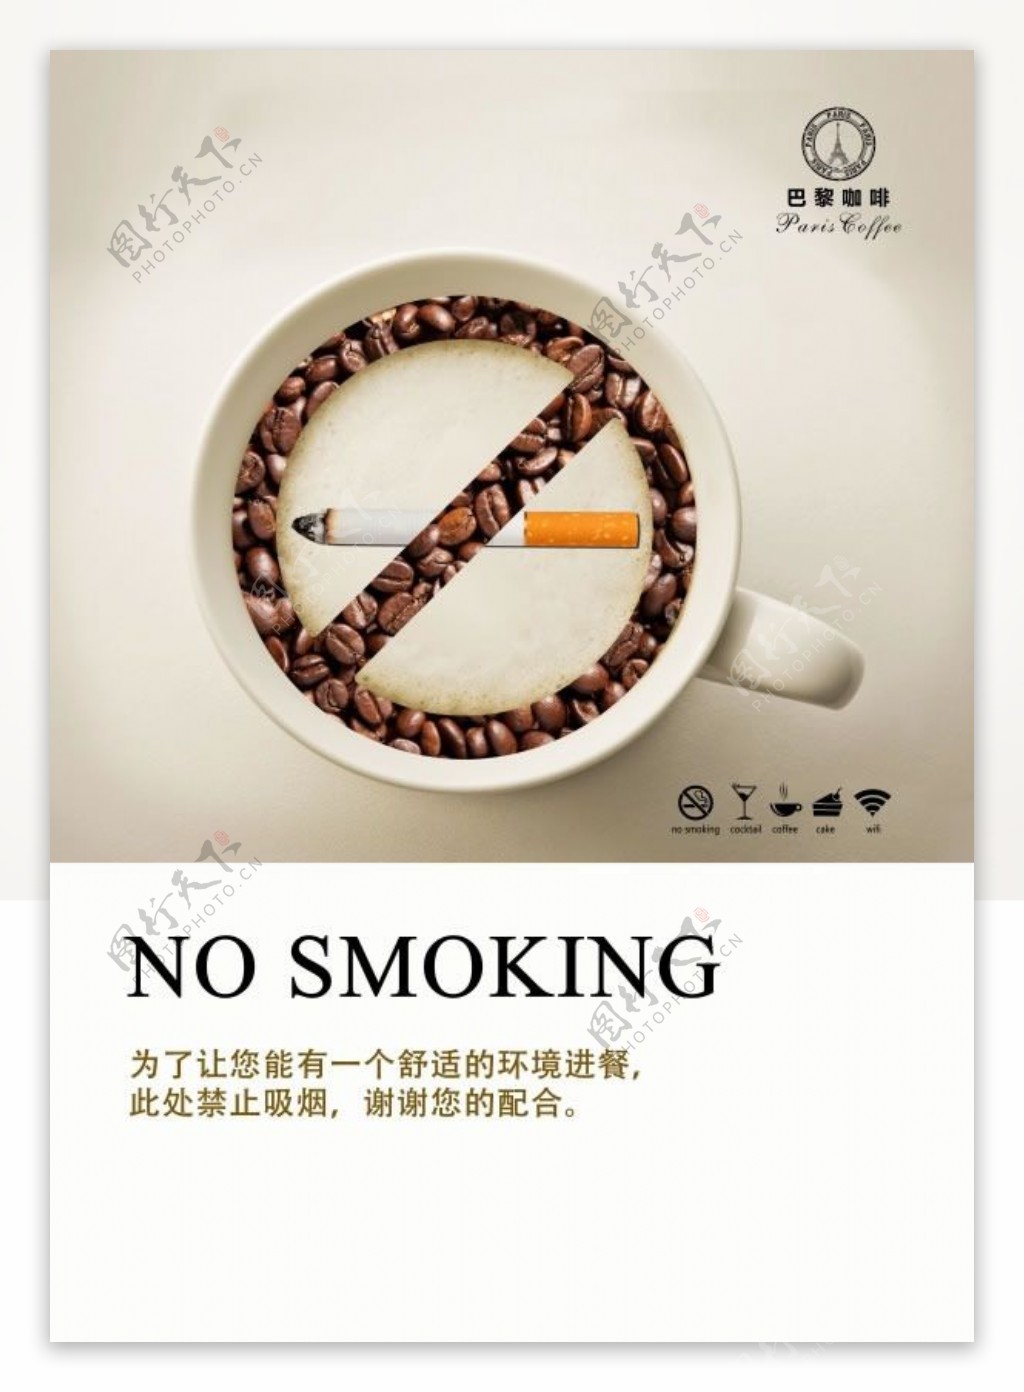 巴黎咖啡创意禁烟广告